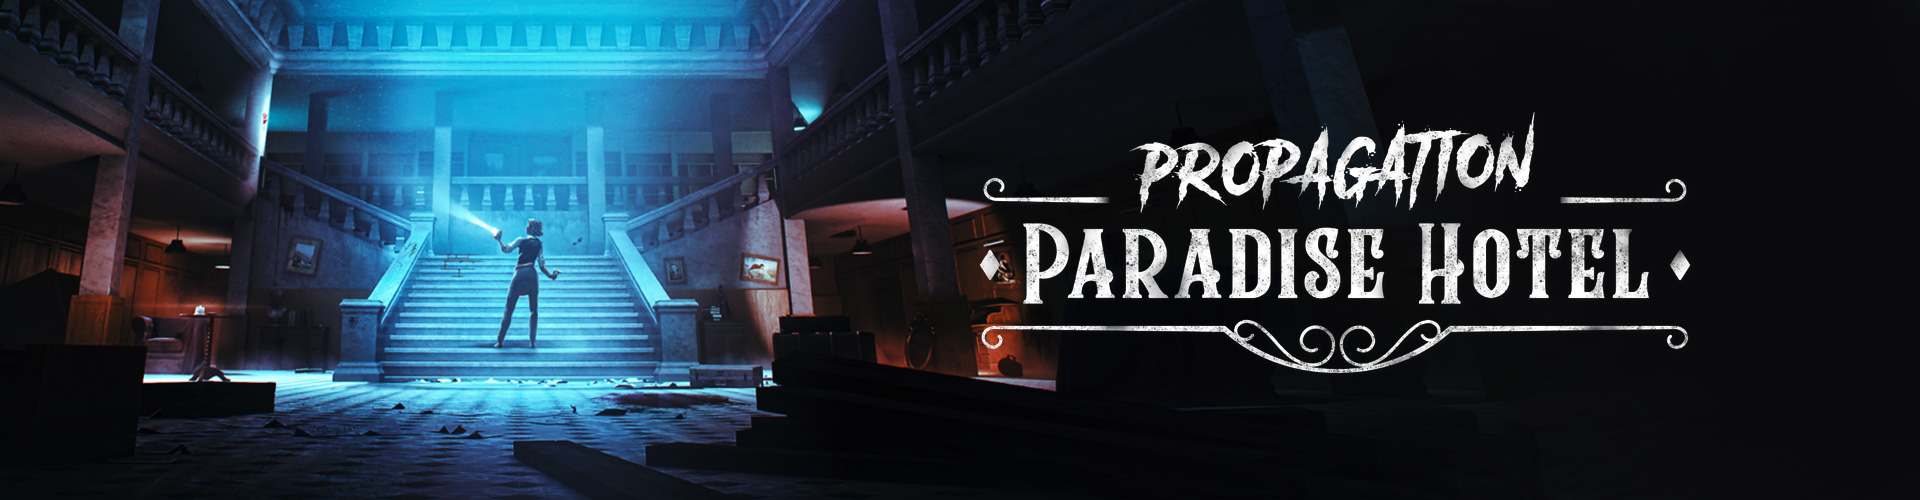 Propagation Paradise Hotel Ã© um jogo de terror psicolÃ³gico em RV